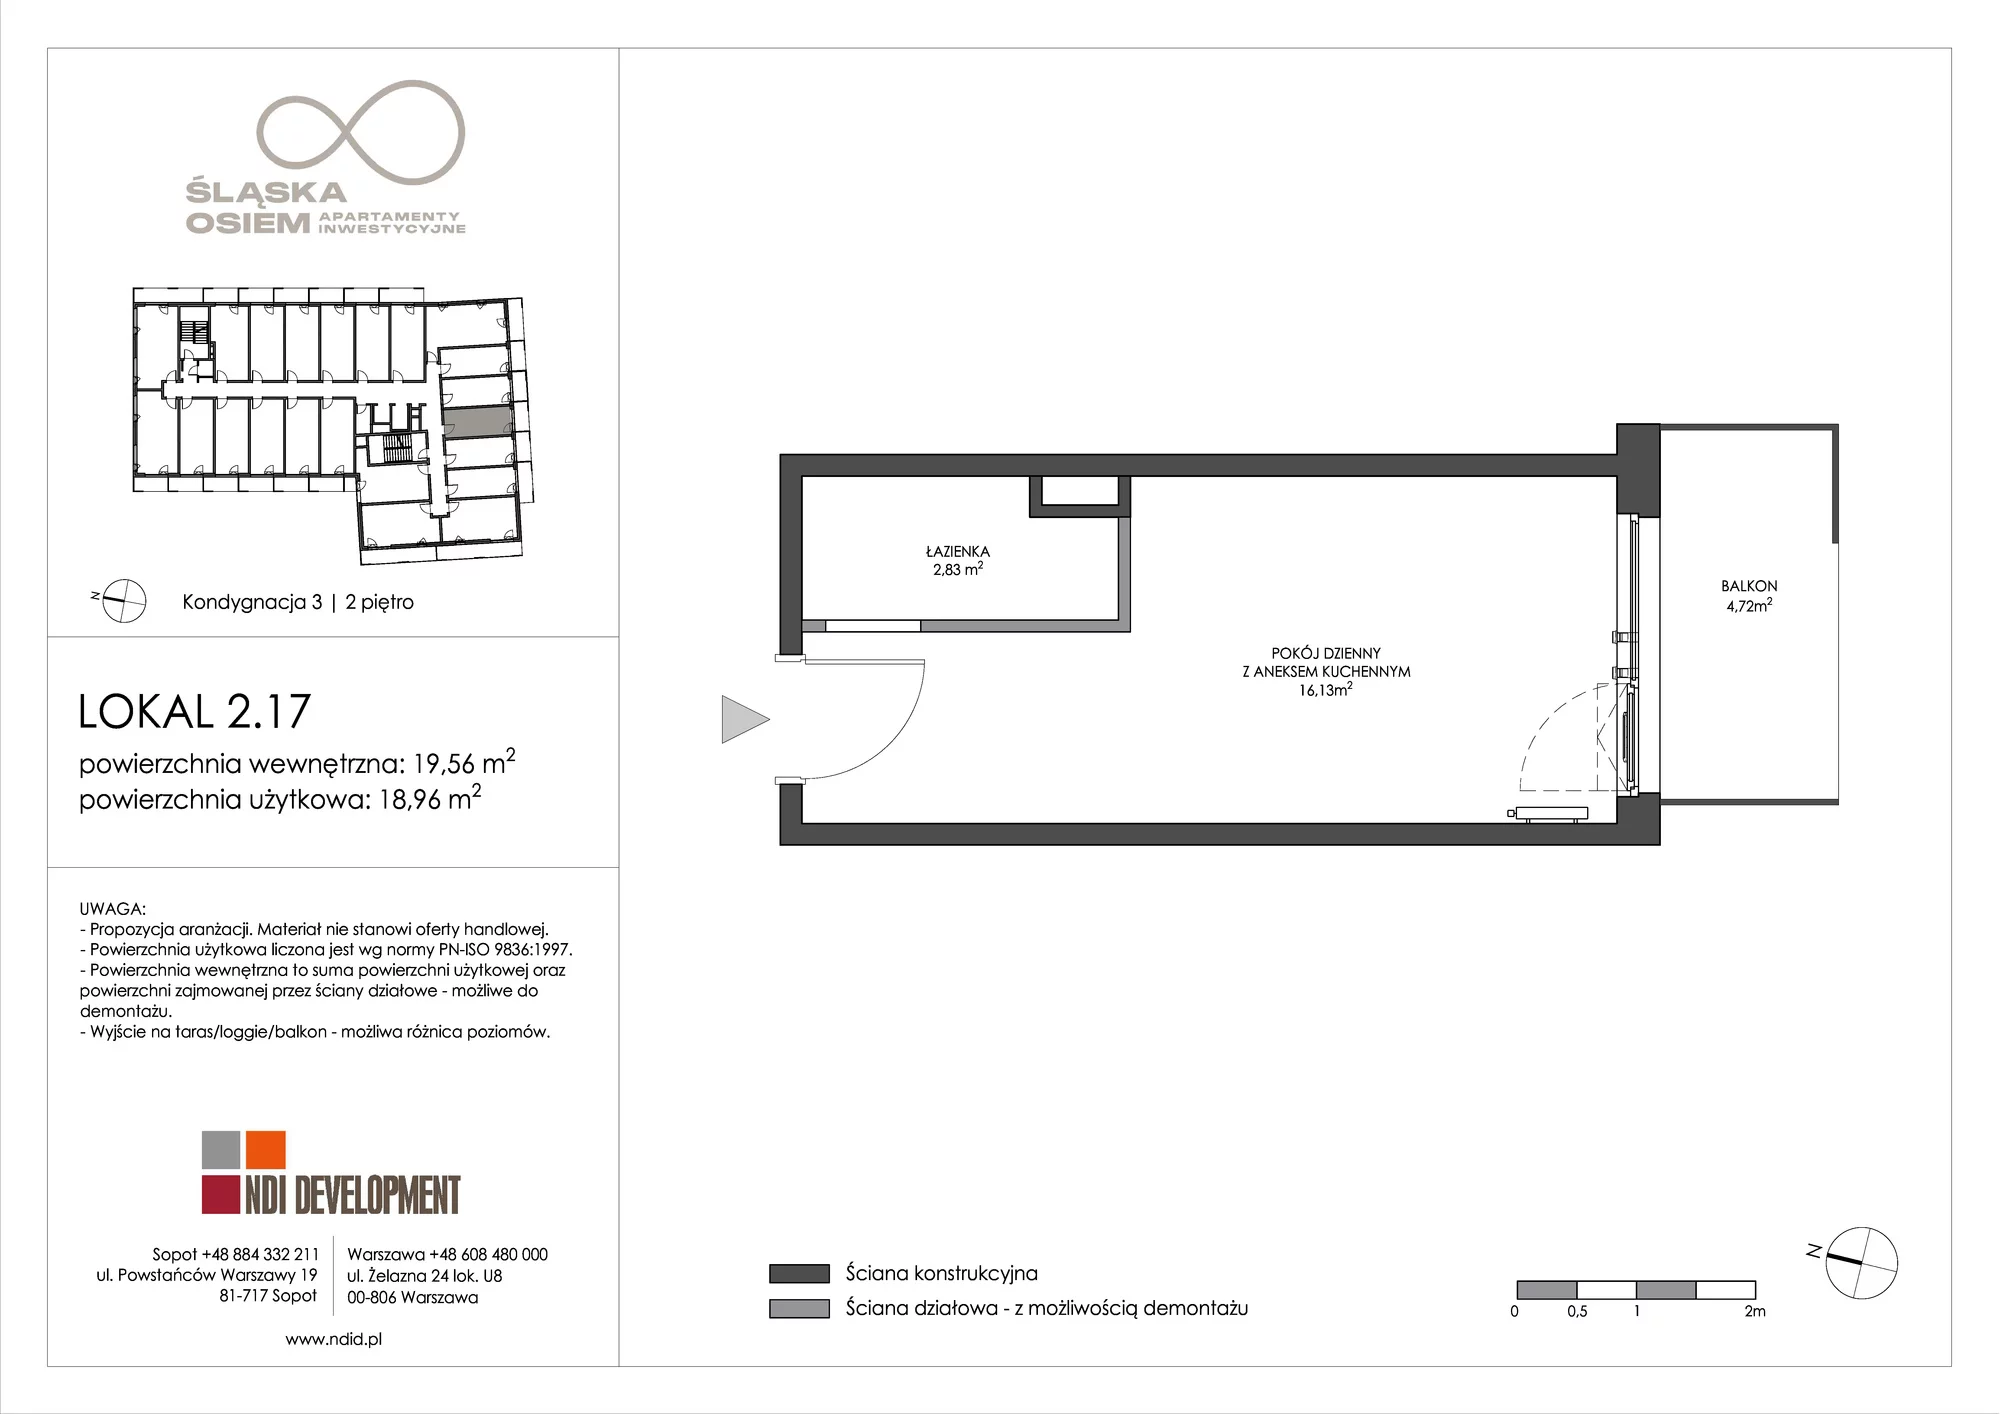 Apartament inwestycyjny 19,56 m², piętro 2, oferta nr 2.17, Śląska Osiem, Gdańsk, Przymorze, ul. Śląska 8